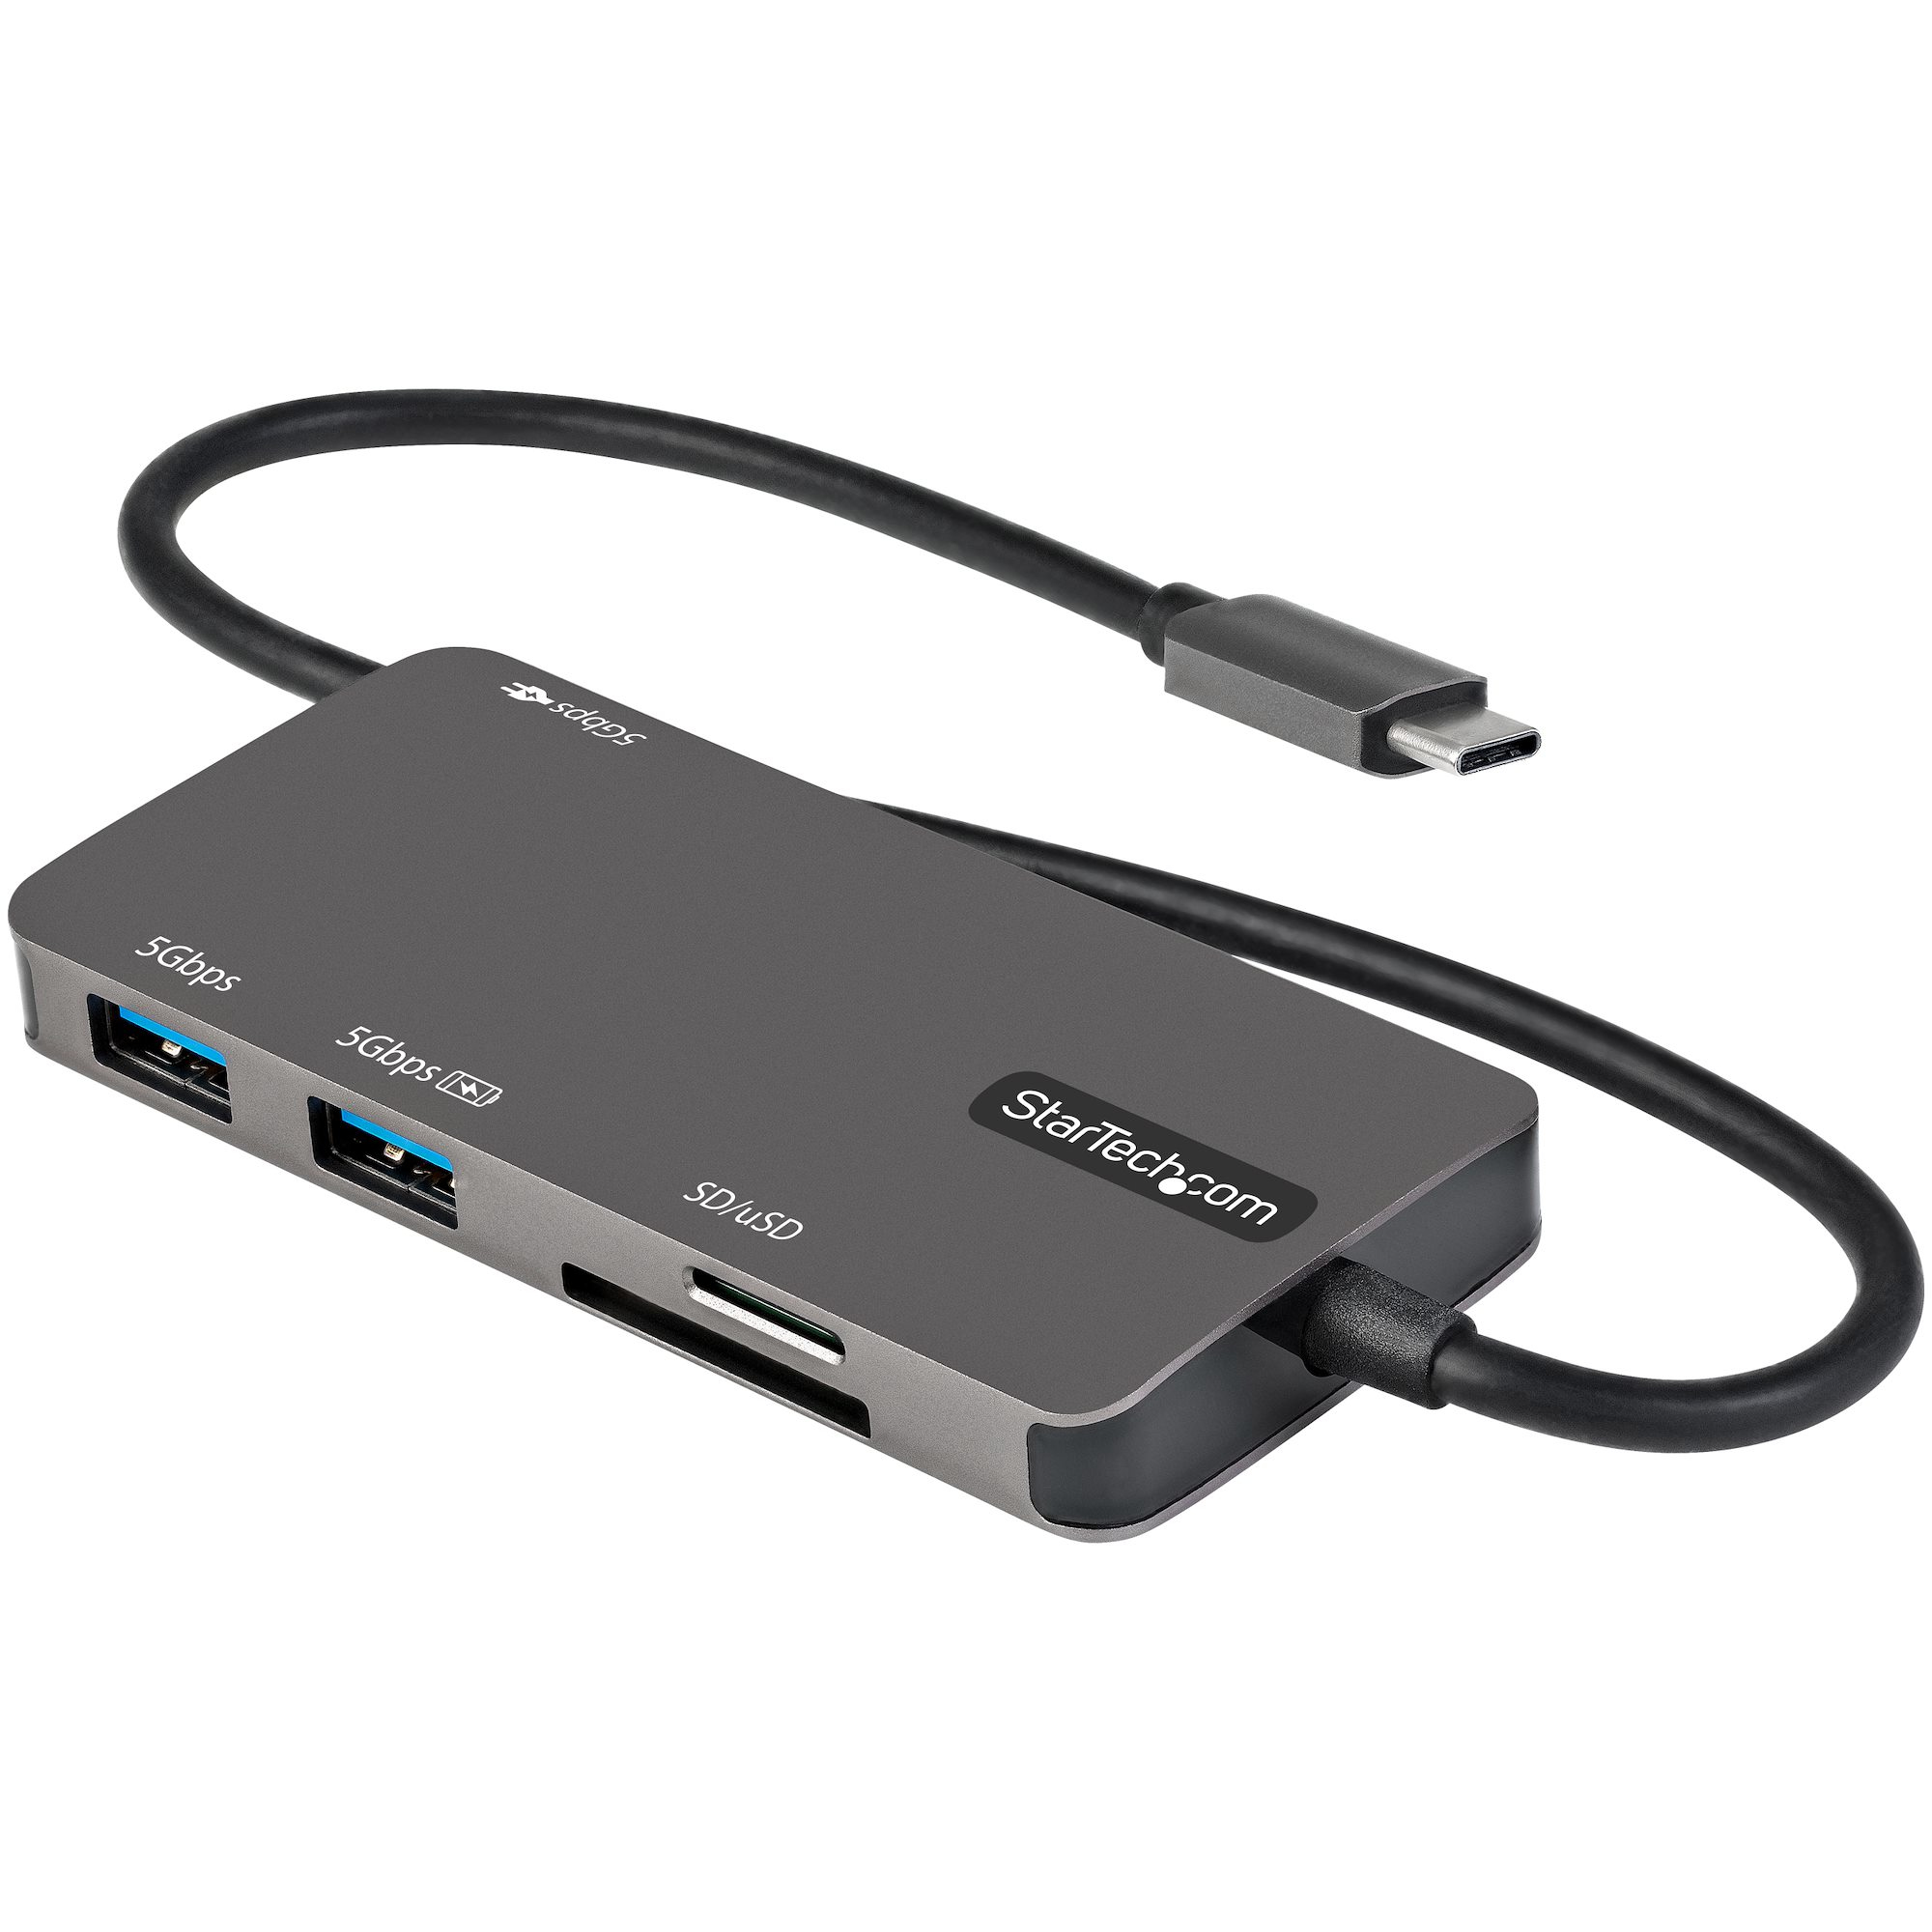 Image of StarTech.com Adattatore multiporta USB C - Da USB-C a 4K HDMI, 100W Power Delivery Pass-through, slot SD/MicroSD, Hub USB 3.0 a 3 porte - USB Type-C Mini Dock - Cavo integrato da 30cm